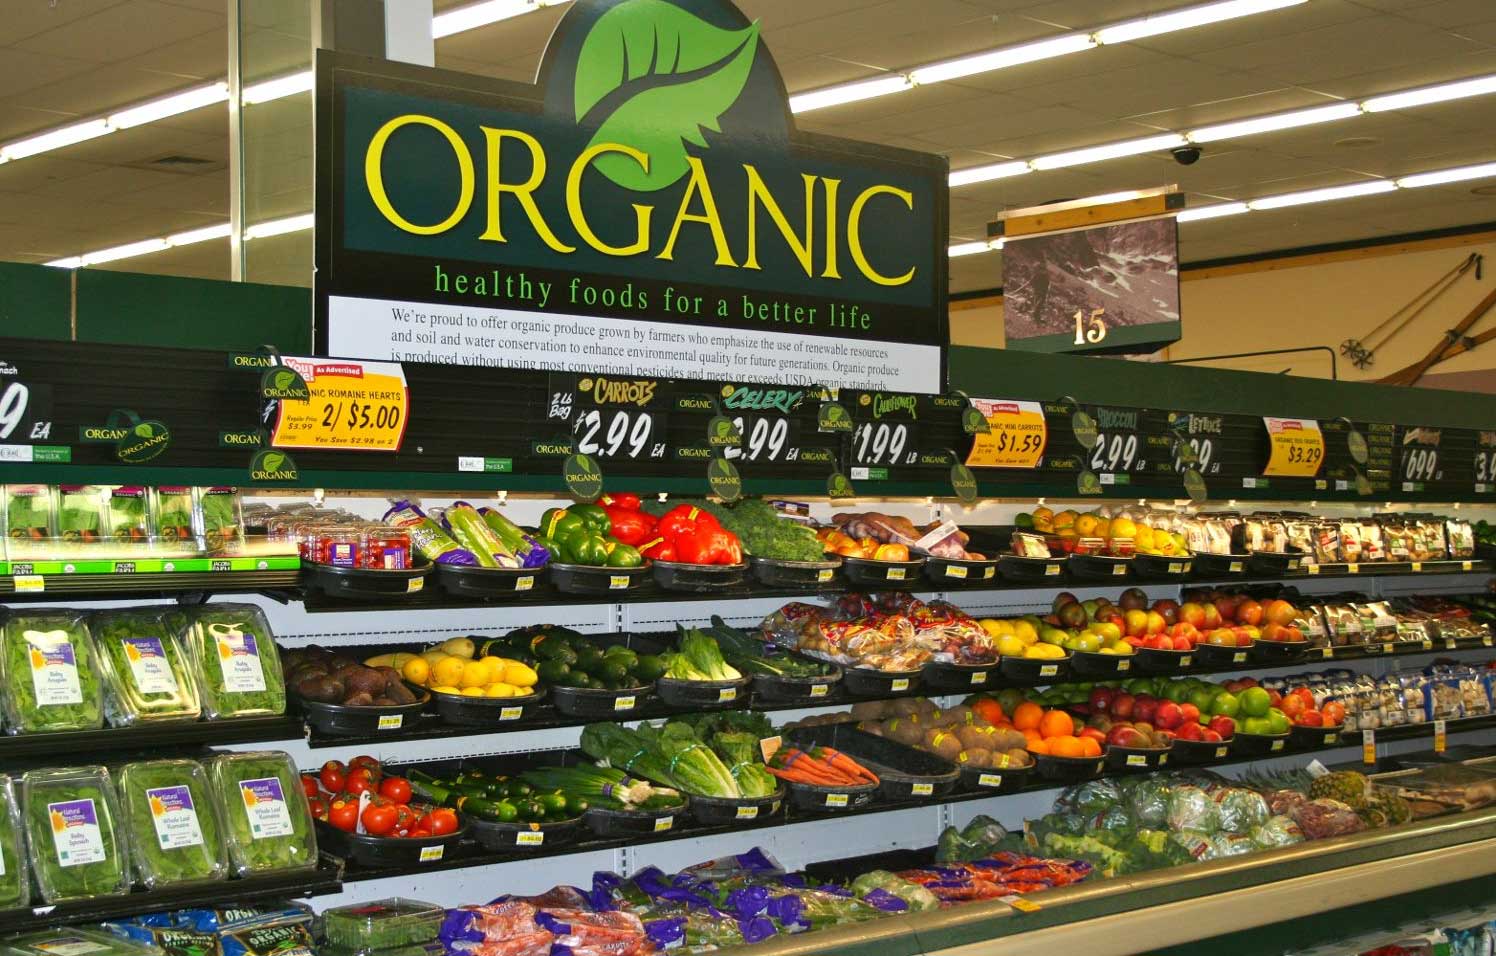 gondolas-em-supermercado-com-produtos-organicos